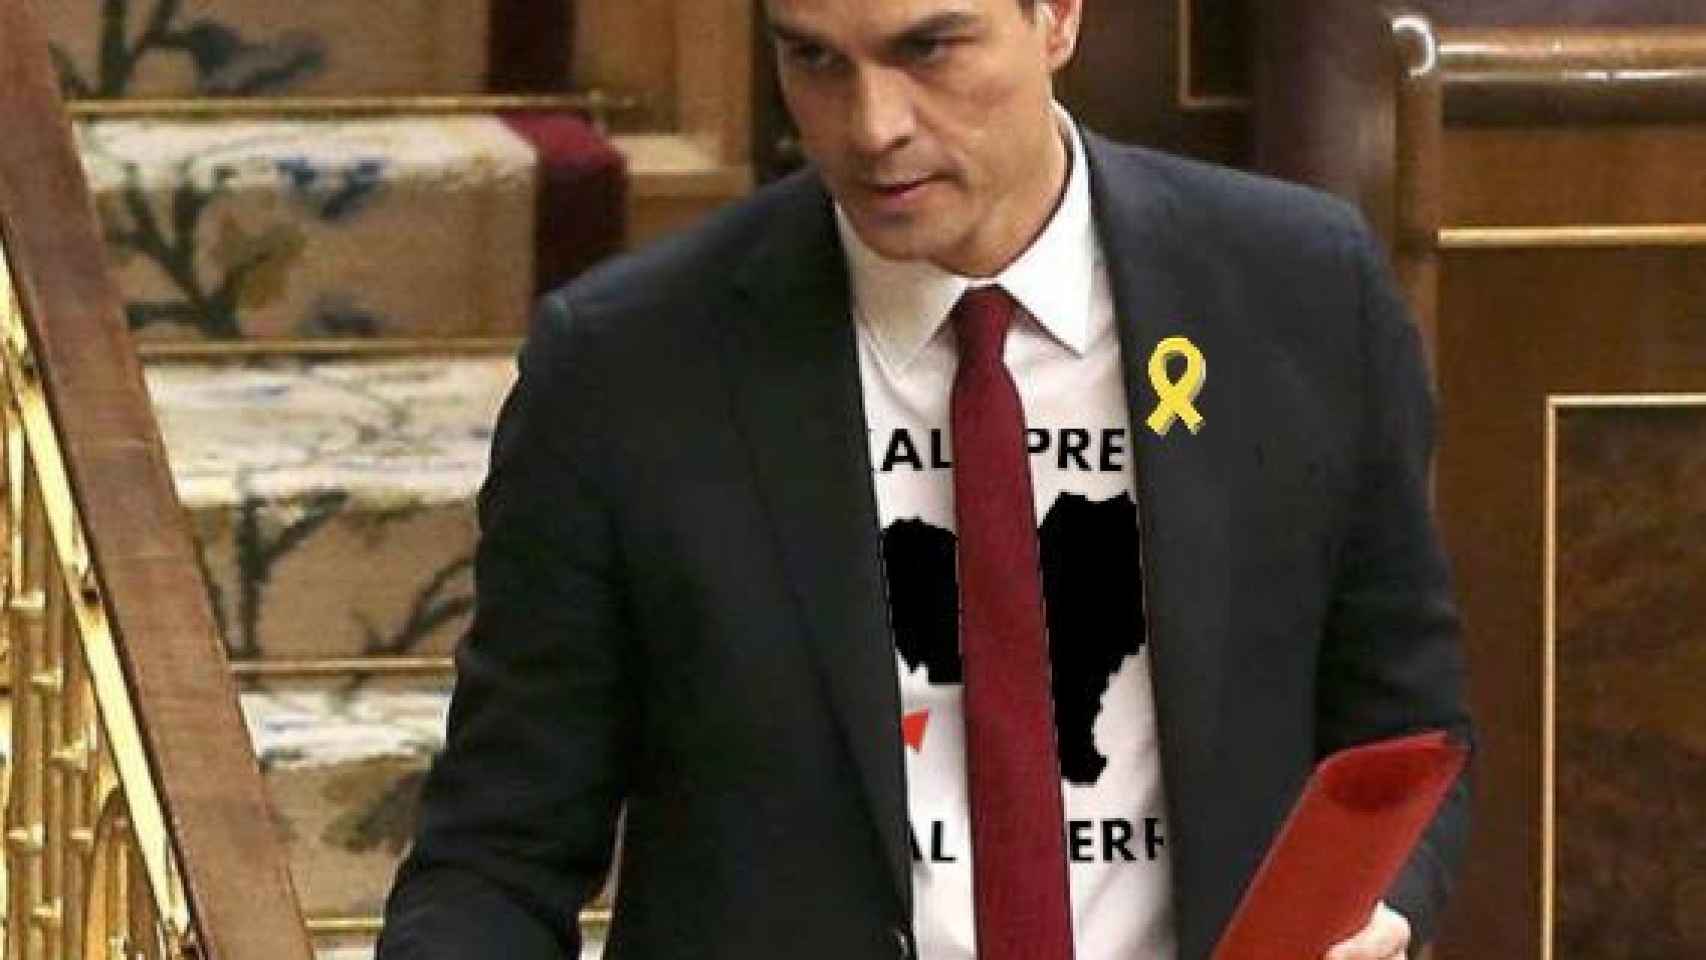 Pedro Sánchez con su hipotético uniforme para debatir la moción de censura.